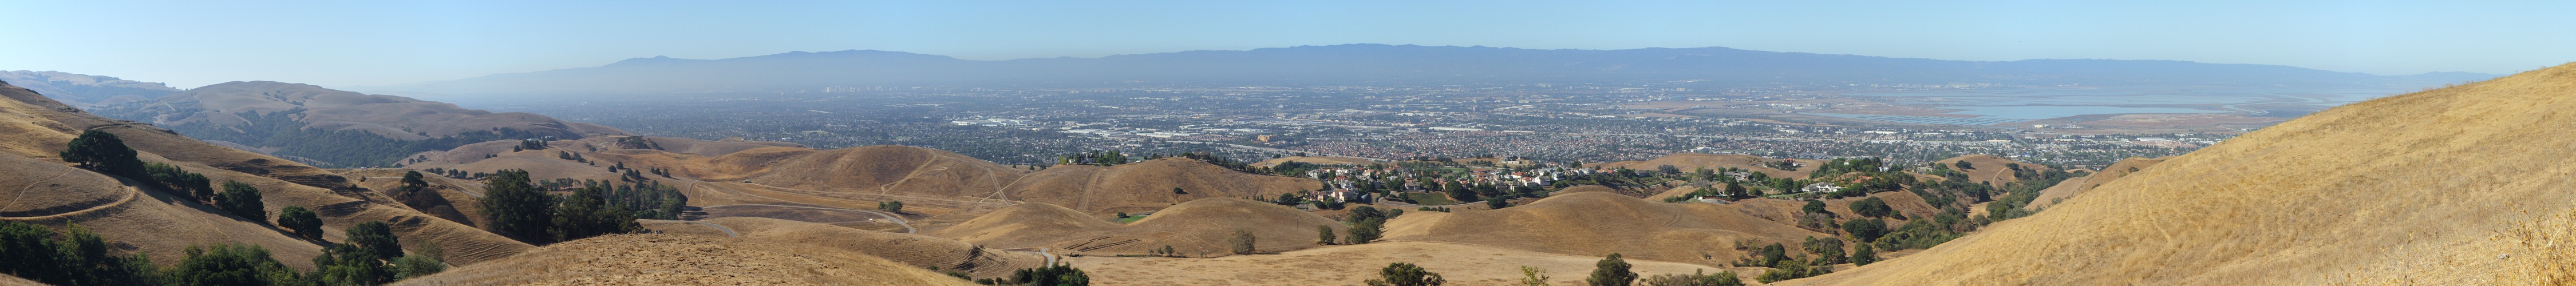 Santa Clara Valley and San Francisco Bay